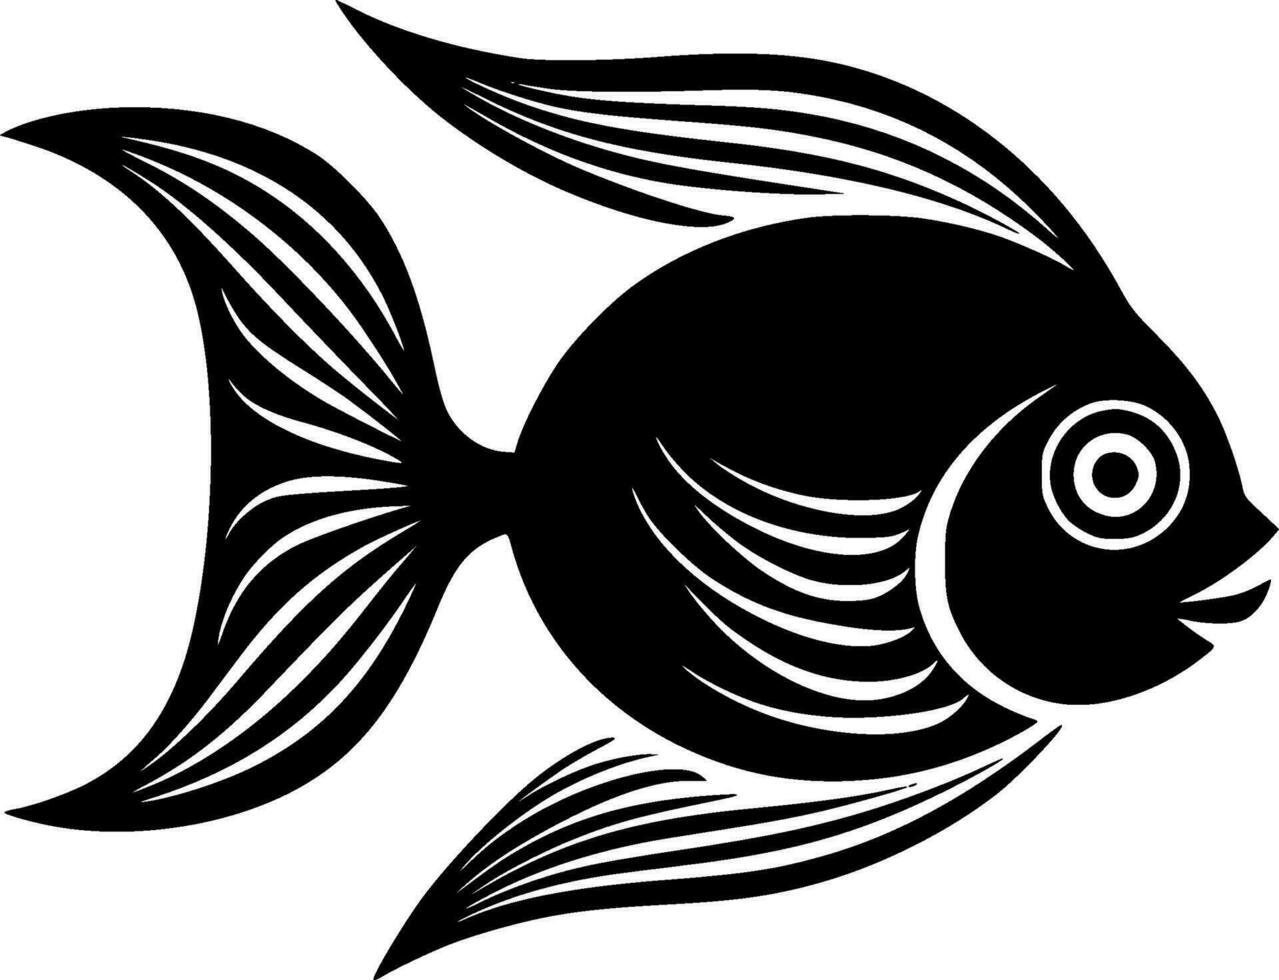 fisk - minimalistisk och platt logotyp - vektor illustration